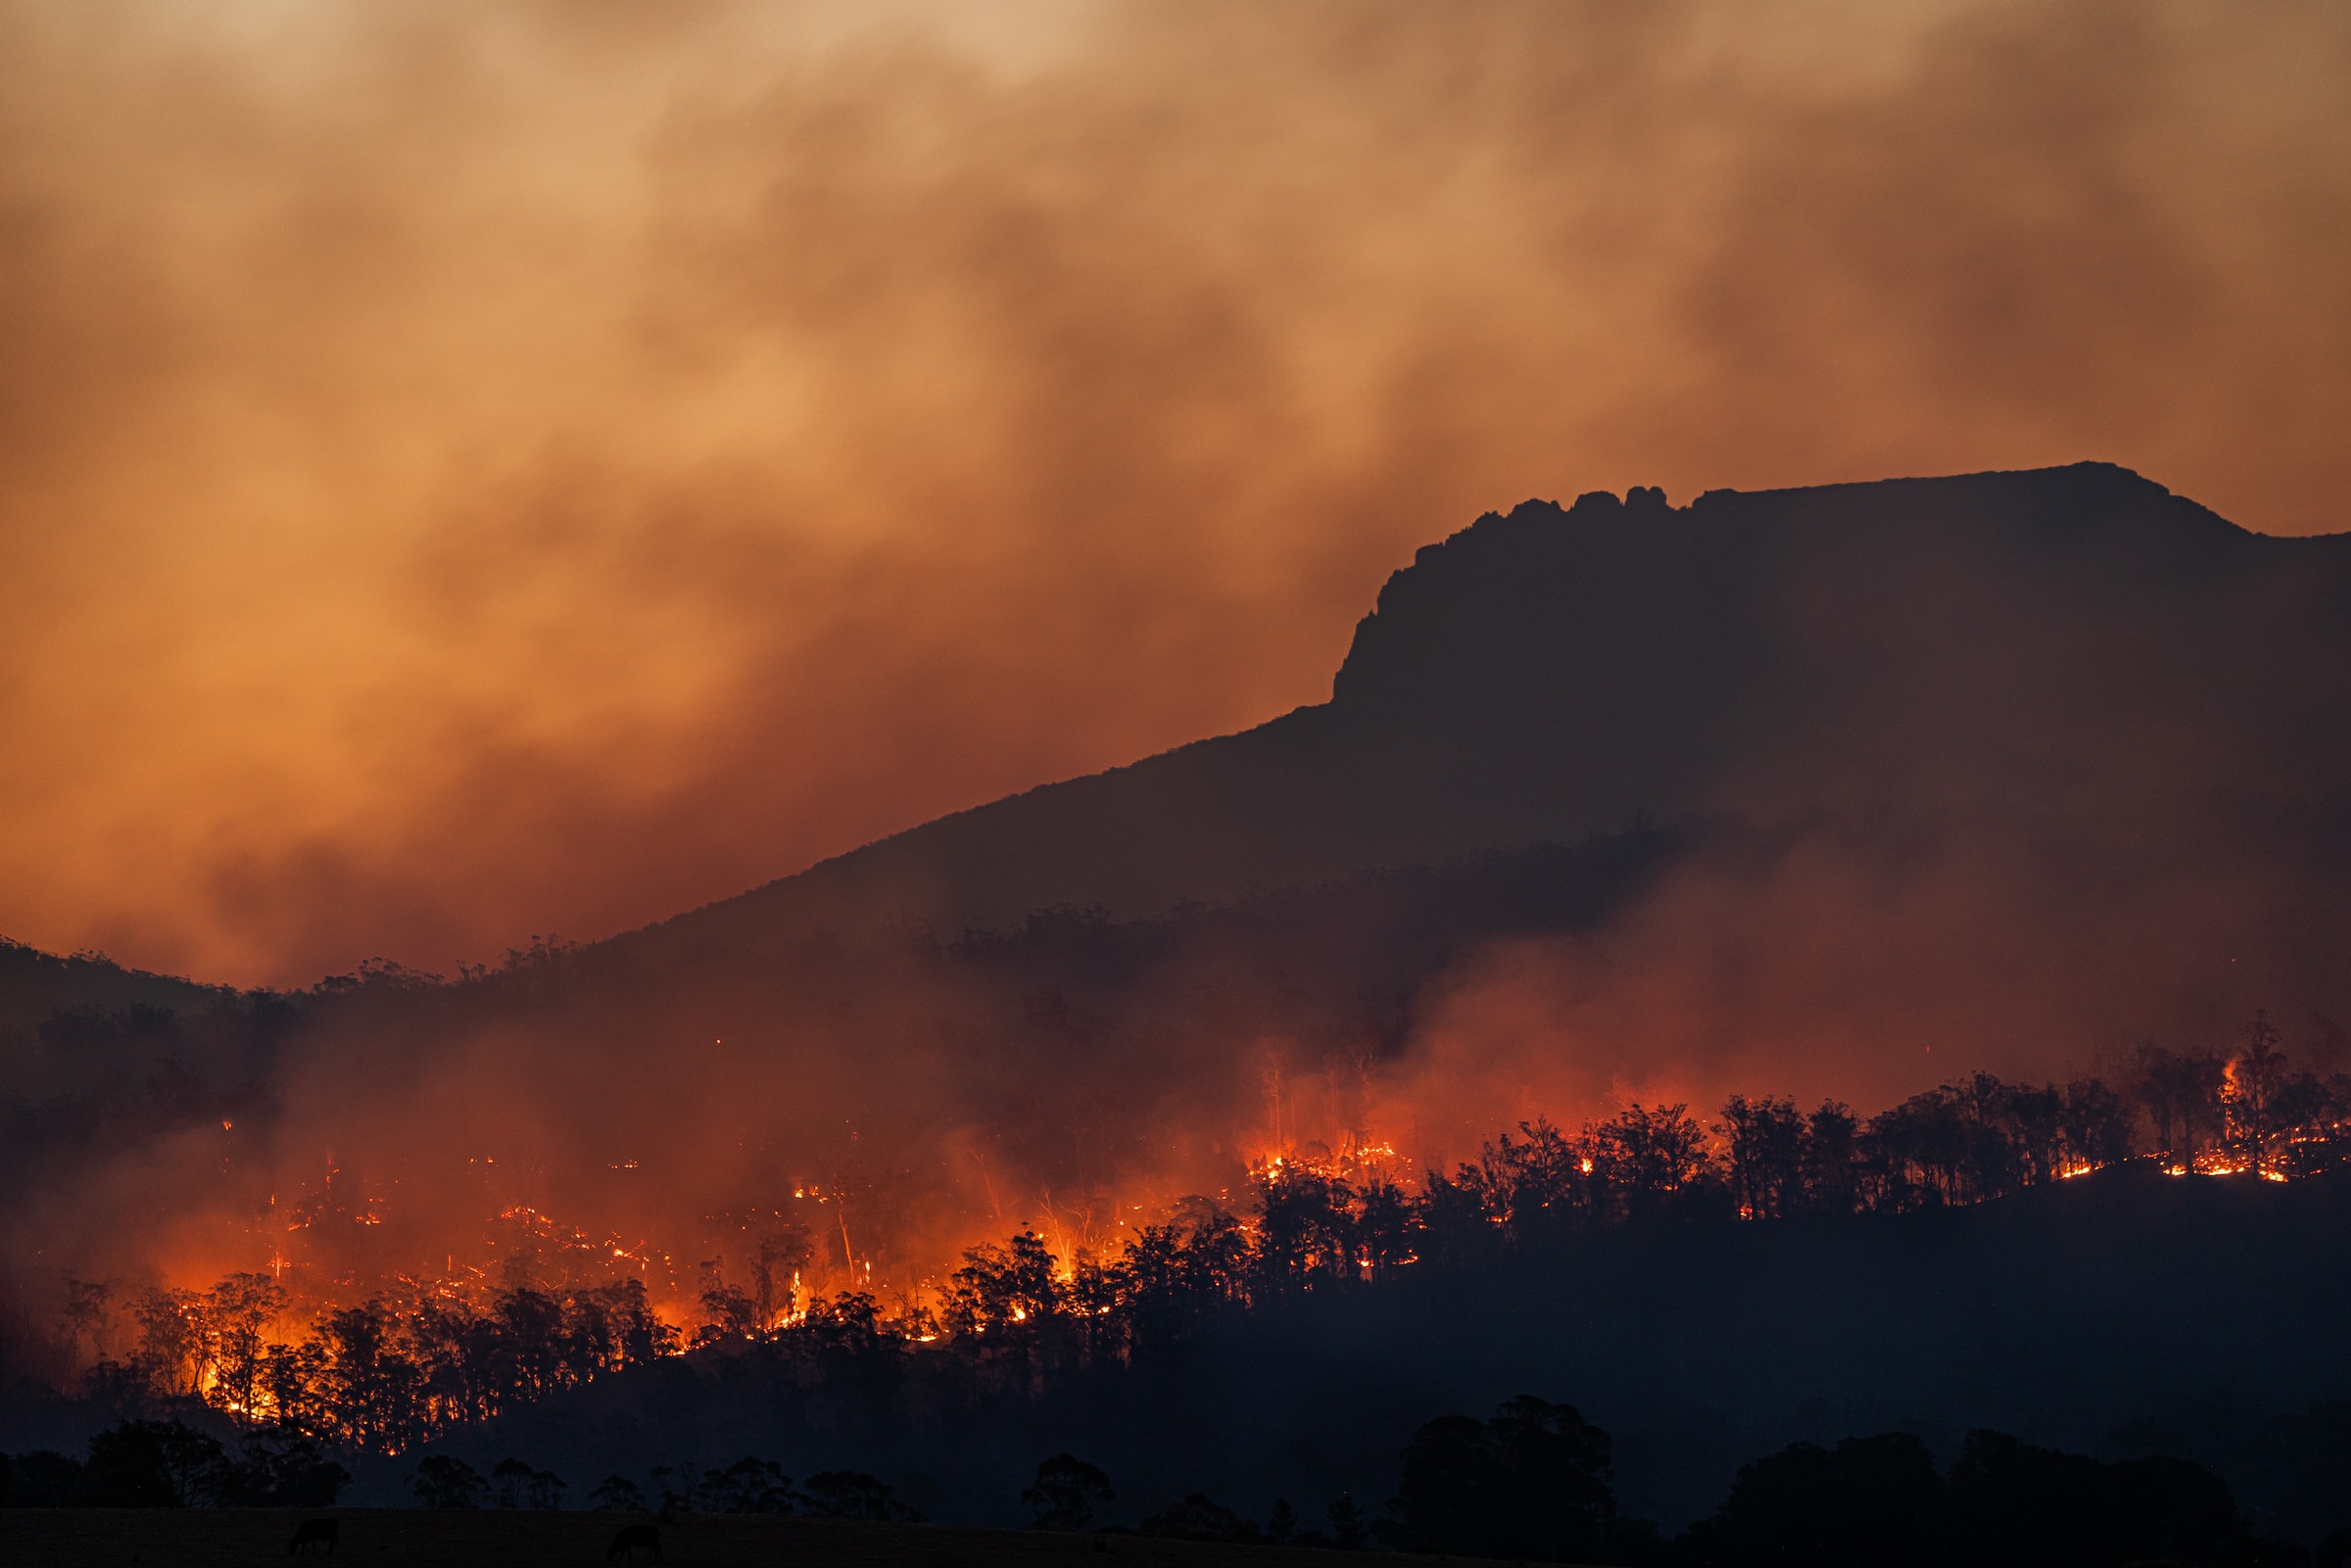 A bushfire burning in the Australian landscape.